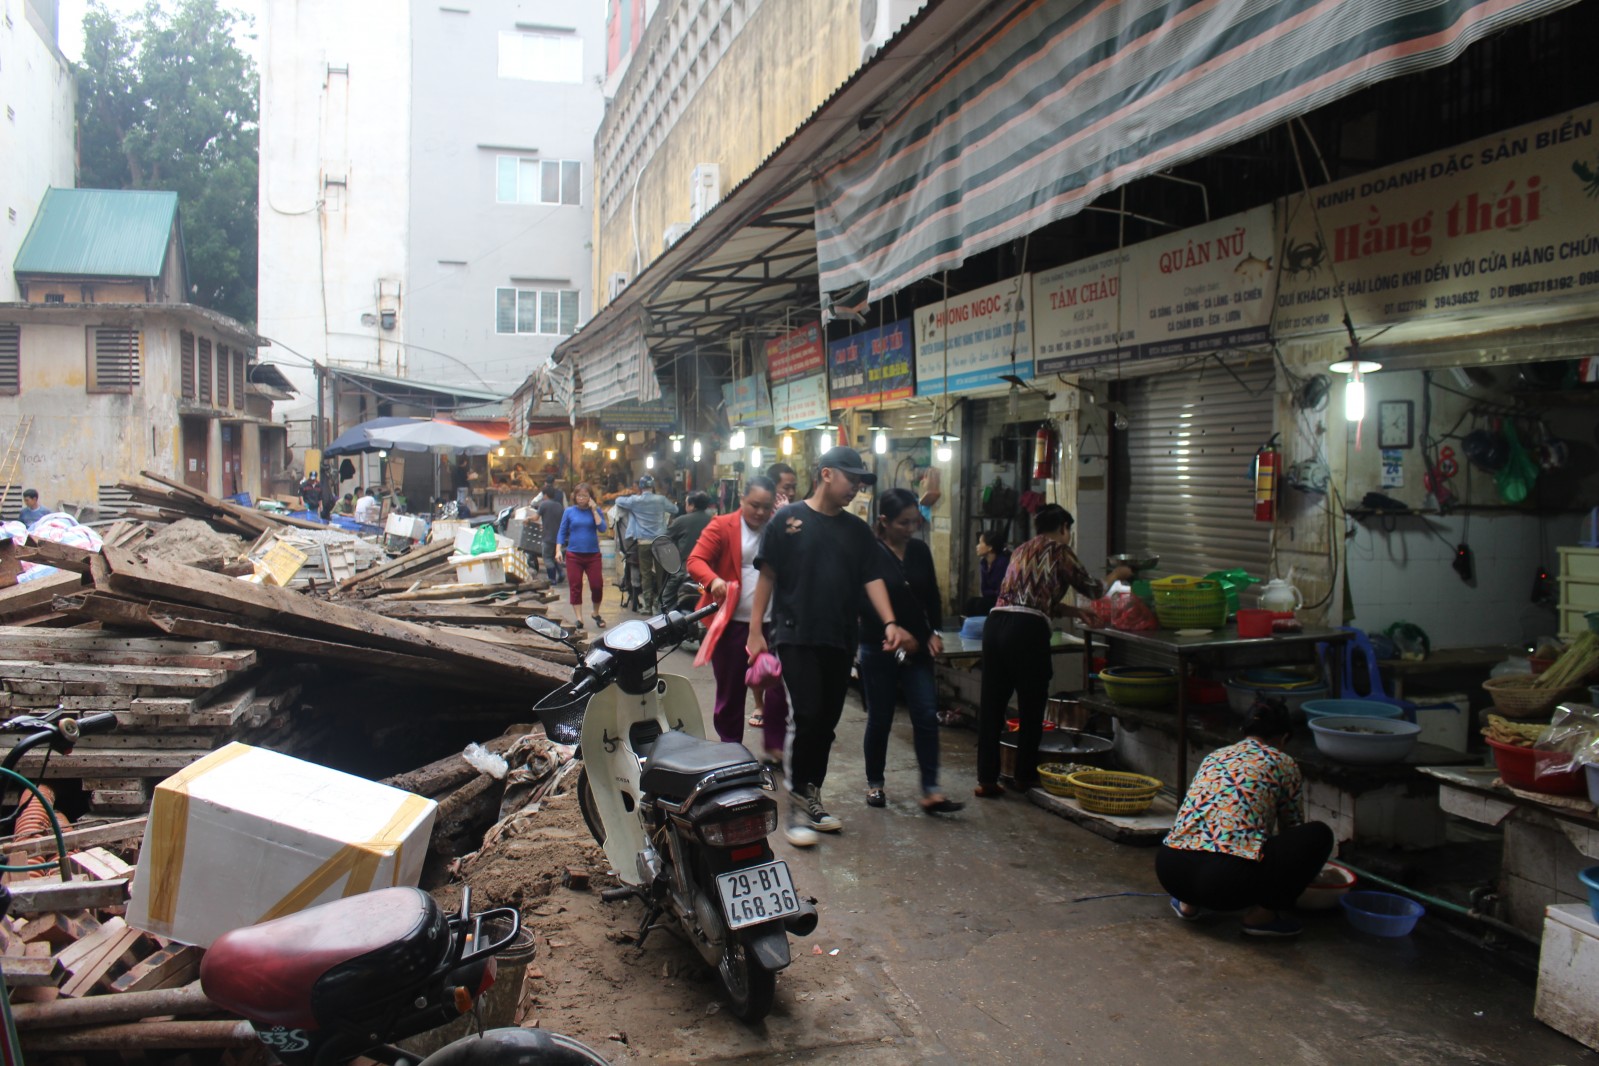 Ảnh 1 : Chợ truyền thống luôn là điểm đến mua bán và giao lưu văn hóa tại nhiều địa phương bởi không gian, phong cách hợp gu người Việt